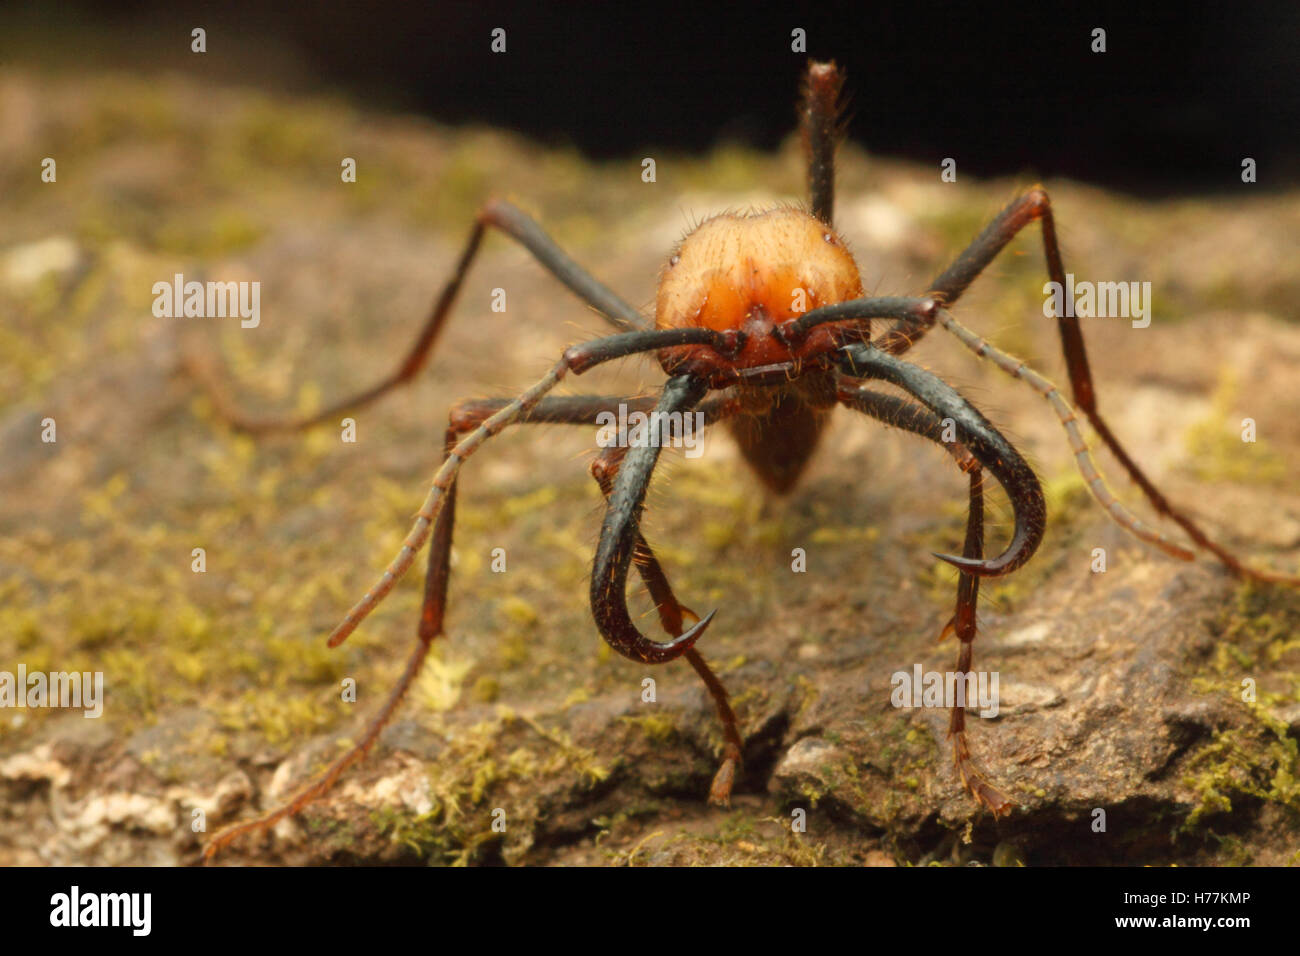 Army ant (Eciton sp.) soldier. Rainforest in Rincon de la Vieja National Park, Costa Rica. Stock Photo